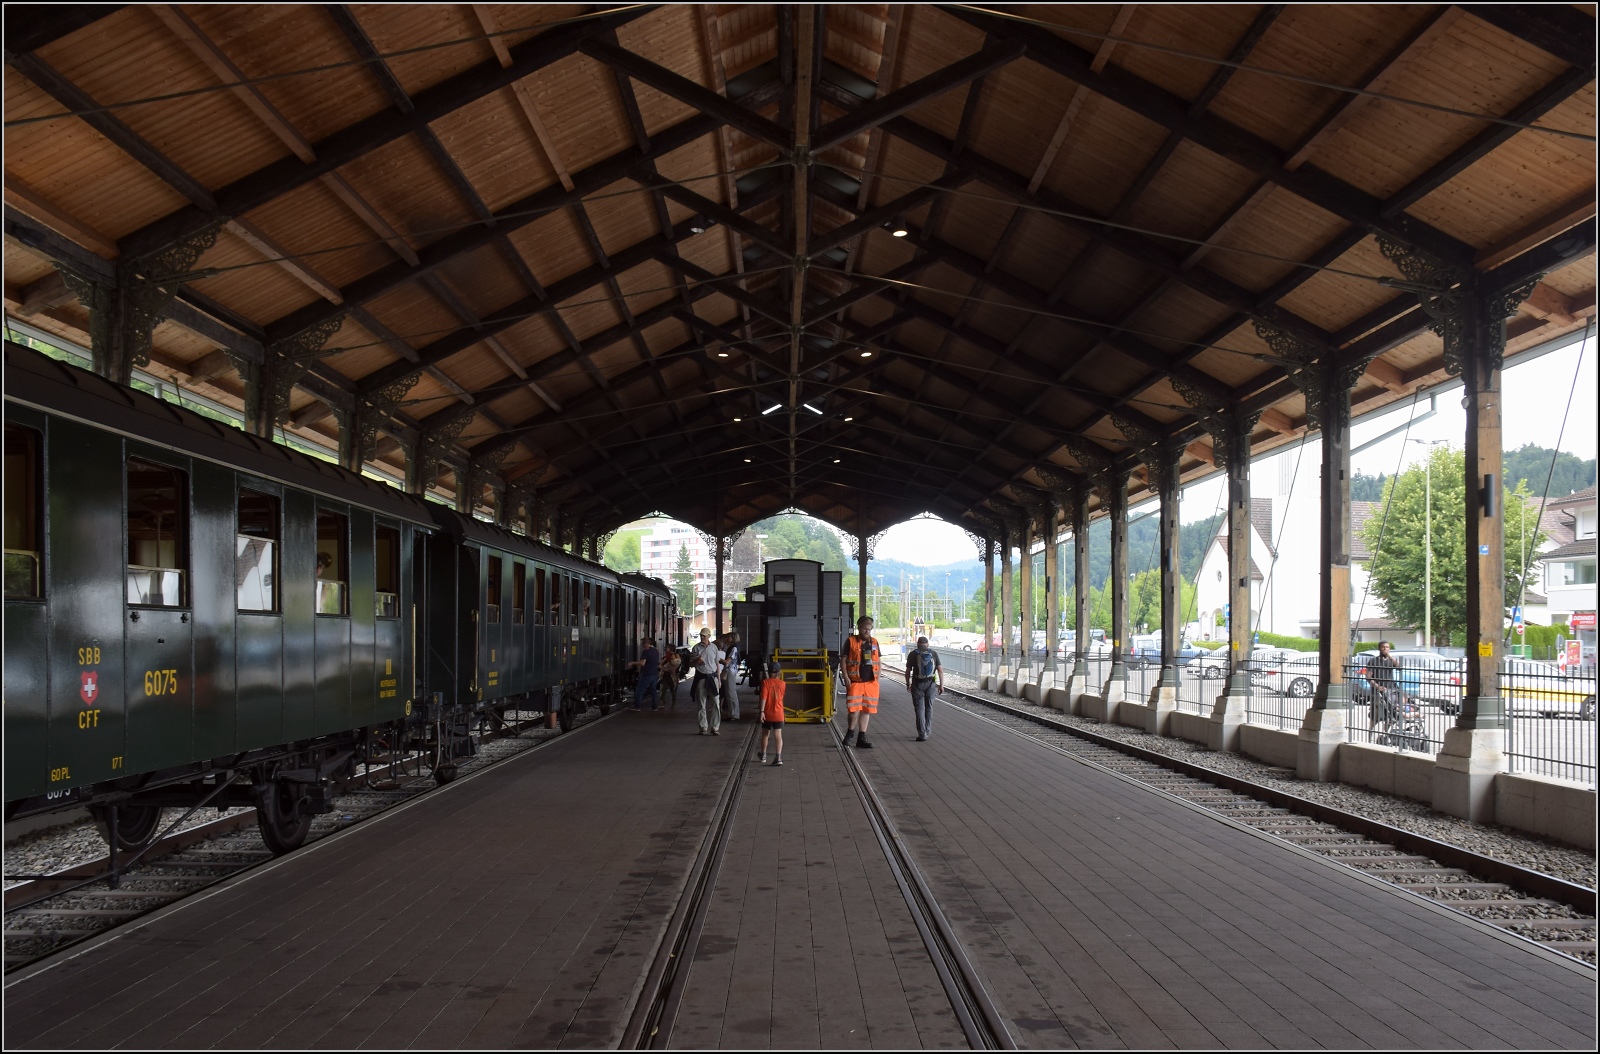 Fahrtag im Zürcher Oberland. 

Blick in die alte Basler Bahnhofshalle. Diese Halle gehörte zur Erstaustattung des Centralbahnhofs in Basel und war dort an der linken Seite des Empfangsgebäudes angebracht. Der Zufall brachte mit sich, dass die Halle in der Hauptwerkstätte in Olten weitergenutzt wurde und schließlich vom DVZO passgenau auf den eigenen Gleisen übernommen werden konnte. So ist diese Schmuckstück aus den Anfangstagen der Eisenbahn in der Schweiz auf wundersame Weise erhalten geblieben. Bauma, Juli 2023.